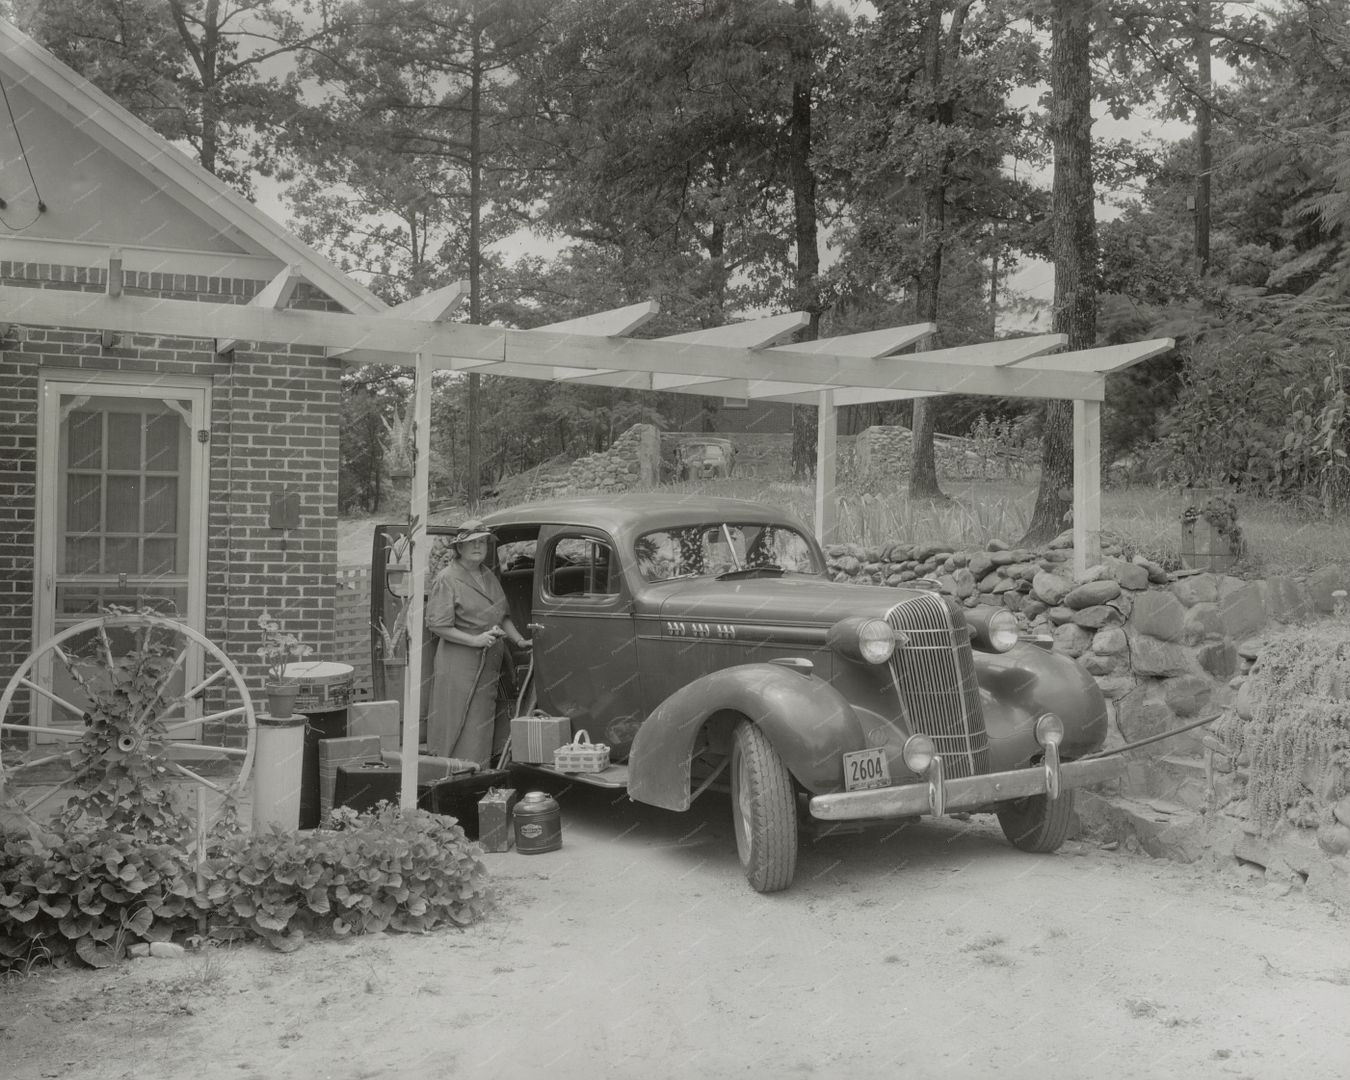  photo RoadTripluggage1938.jpg